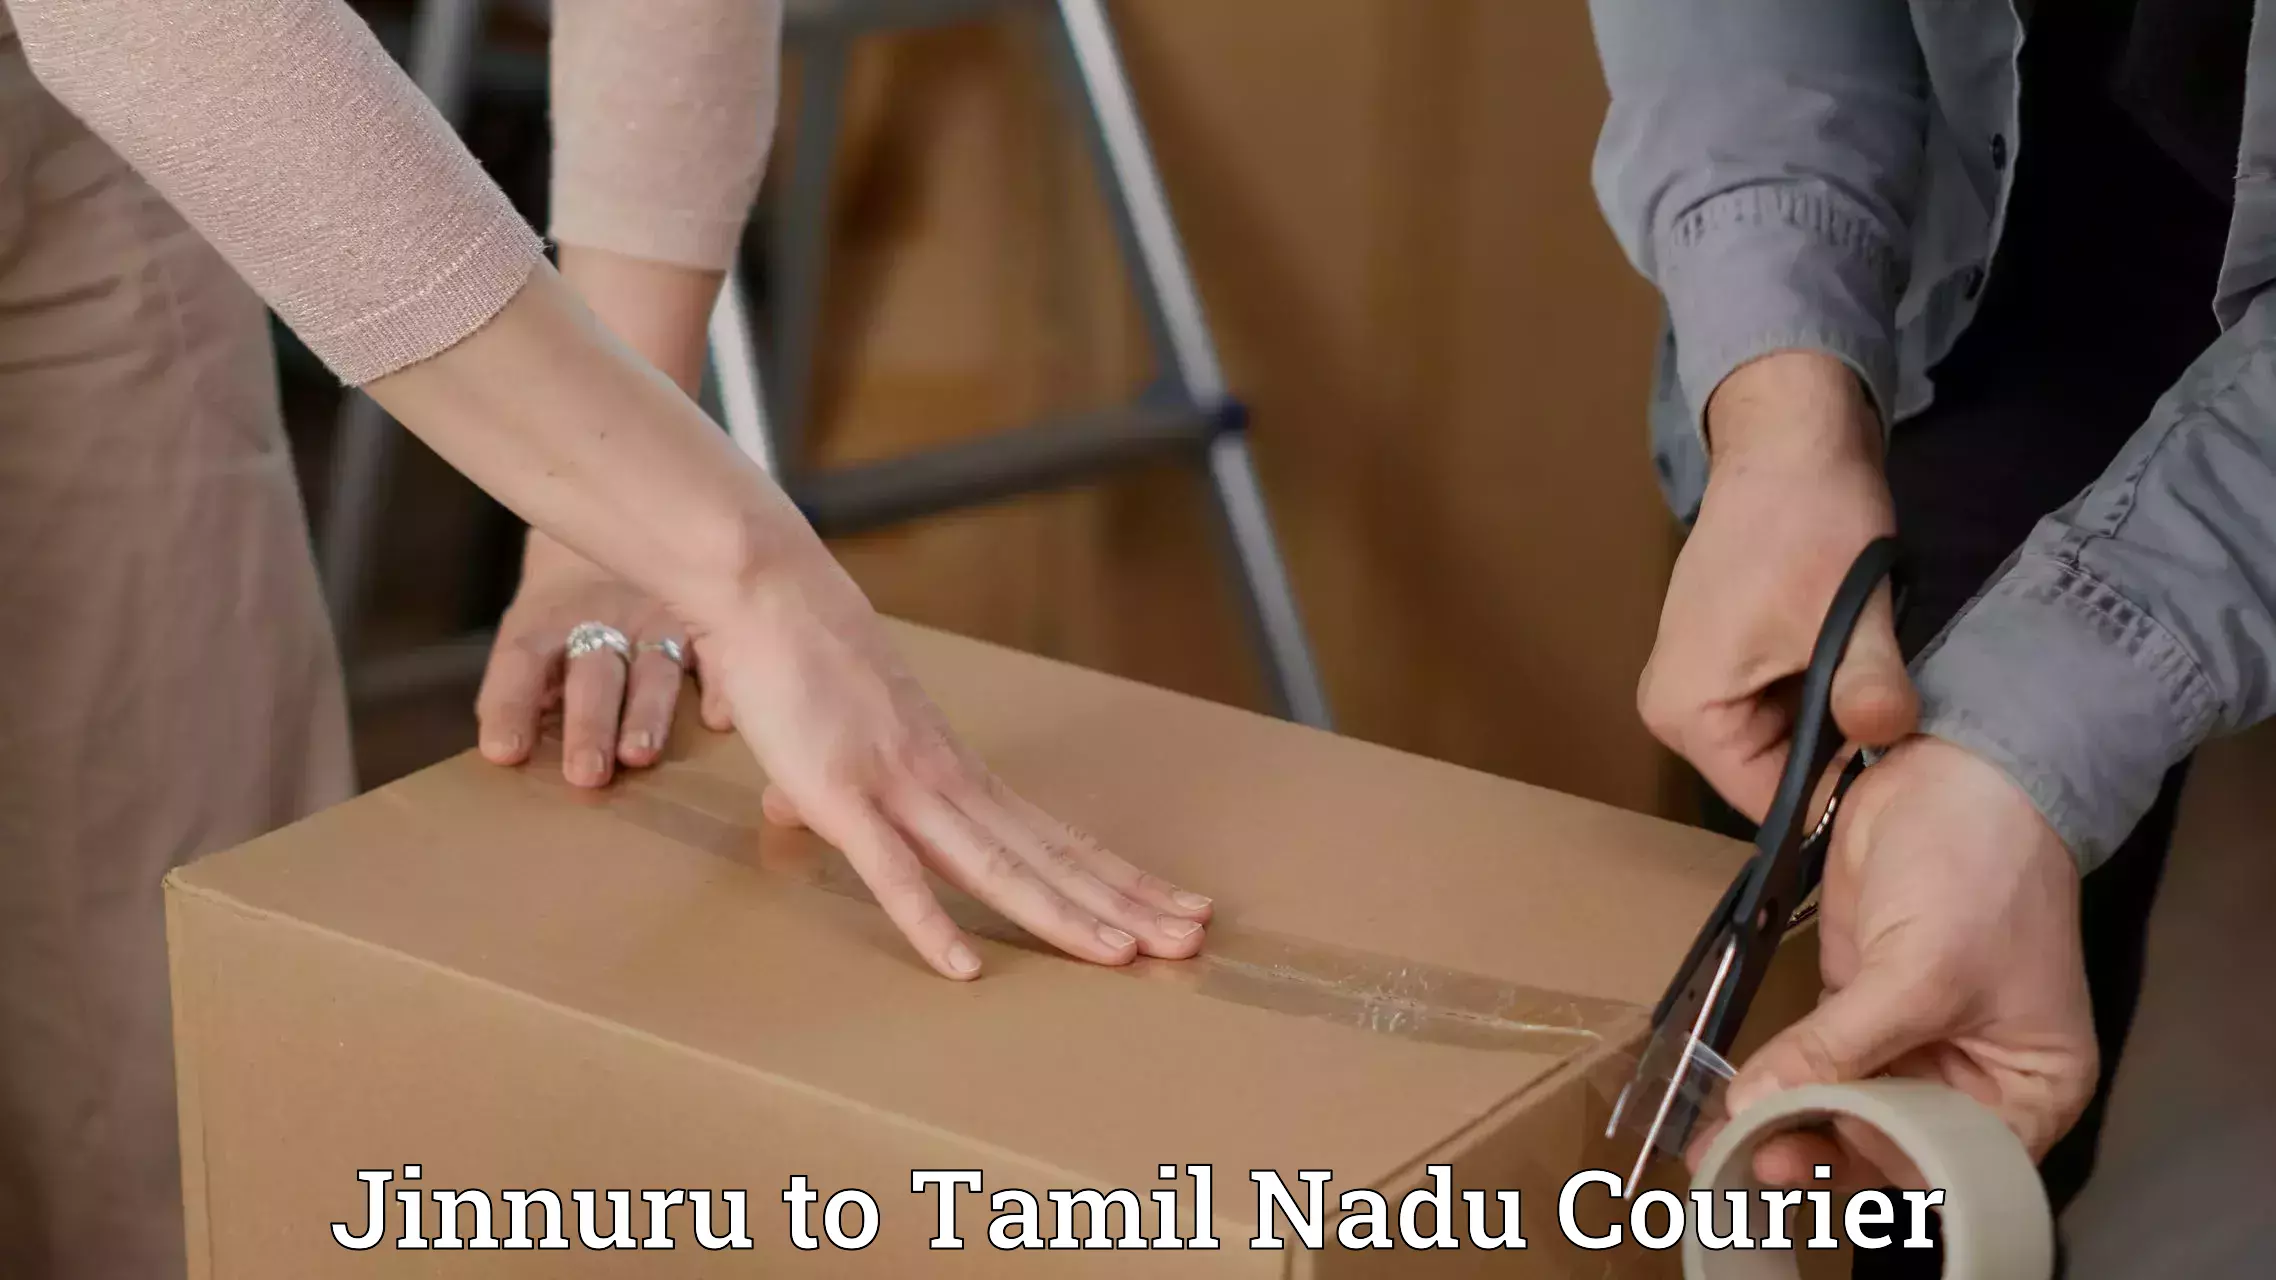 Tracking updates Jinnuru to Tamil Nadu